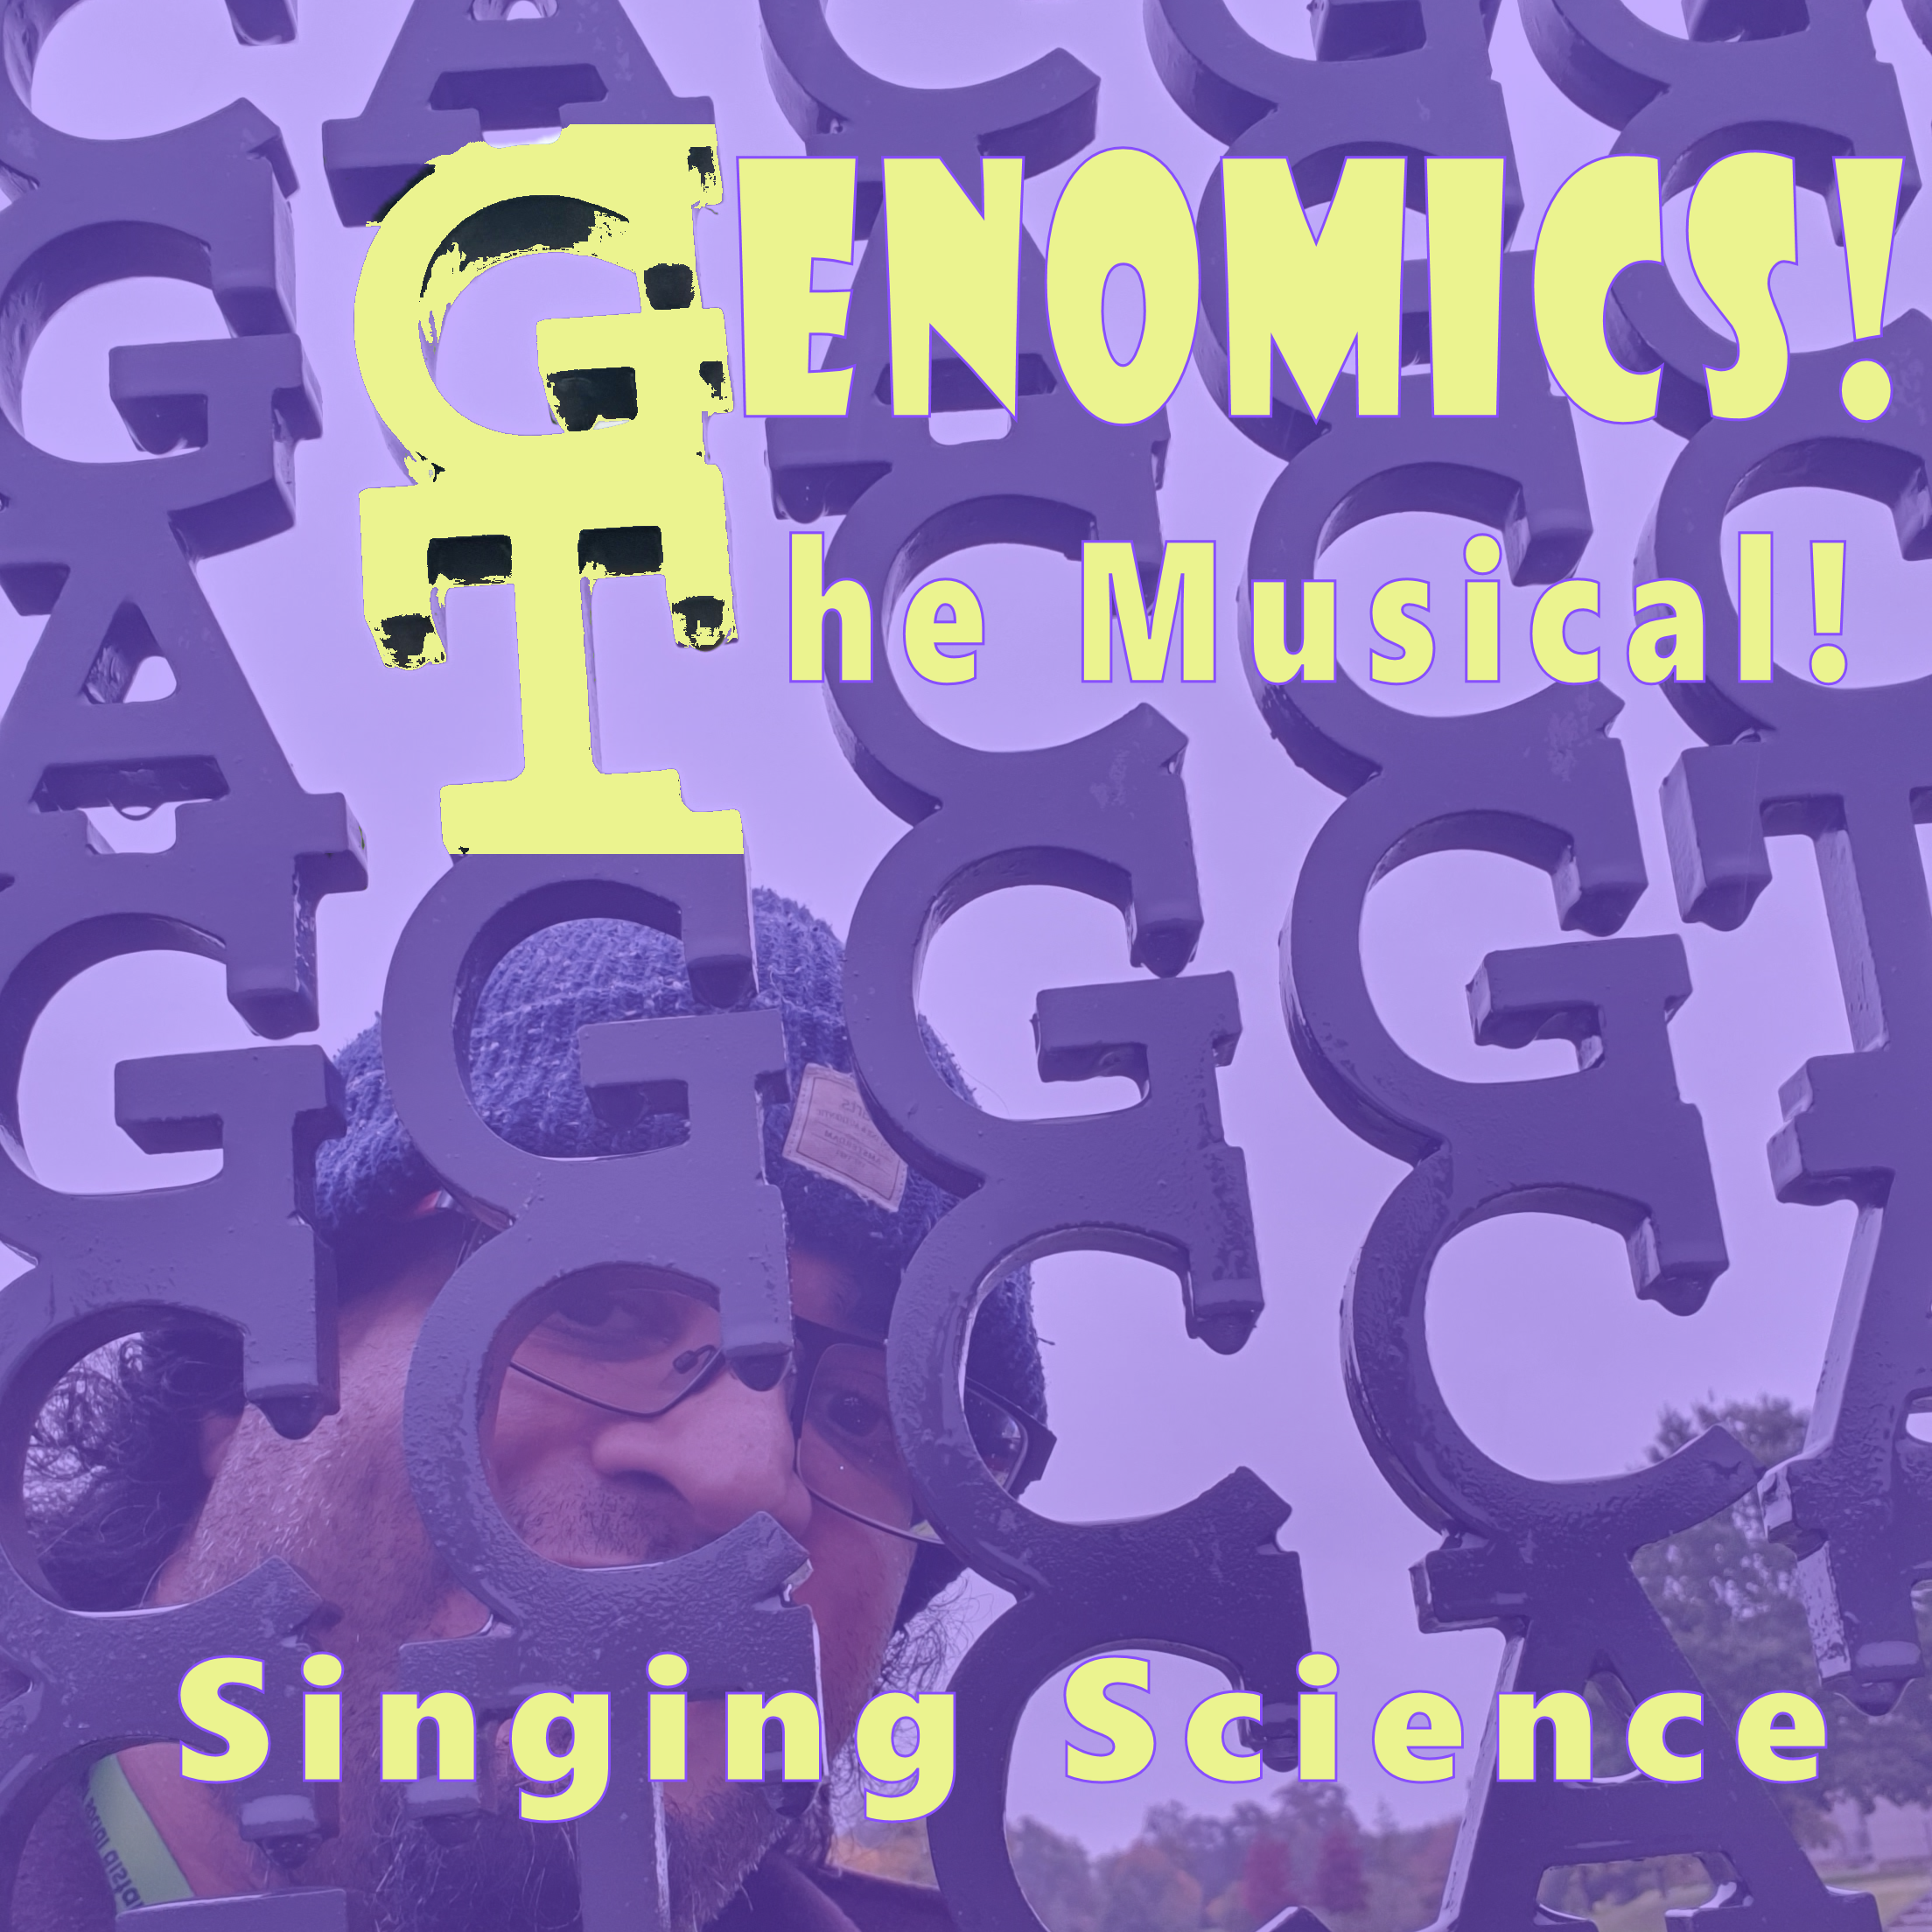 Genomics! The Musical! Album cover